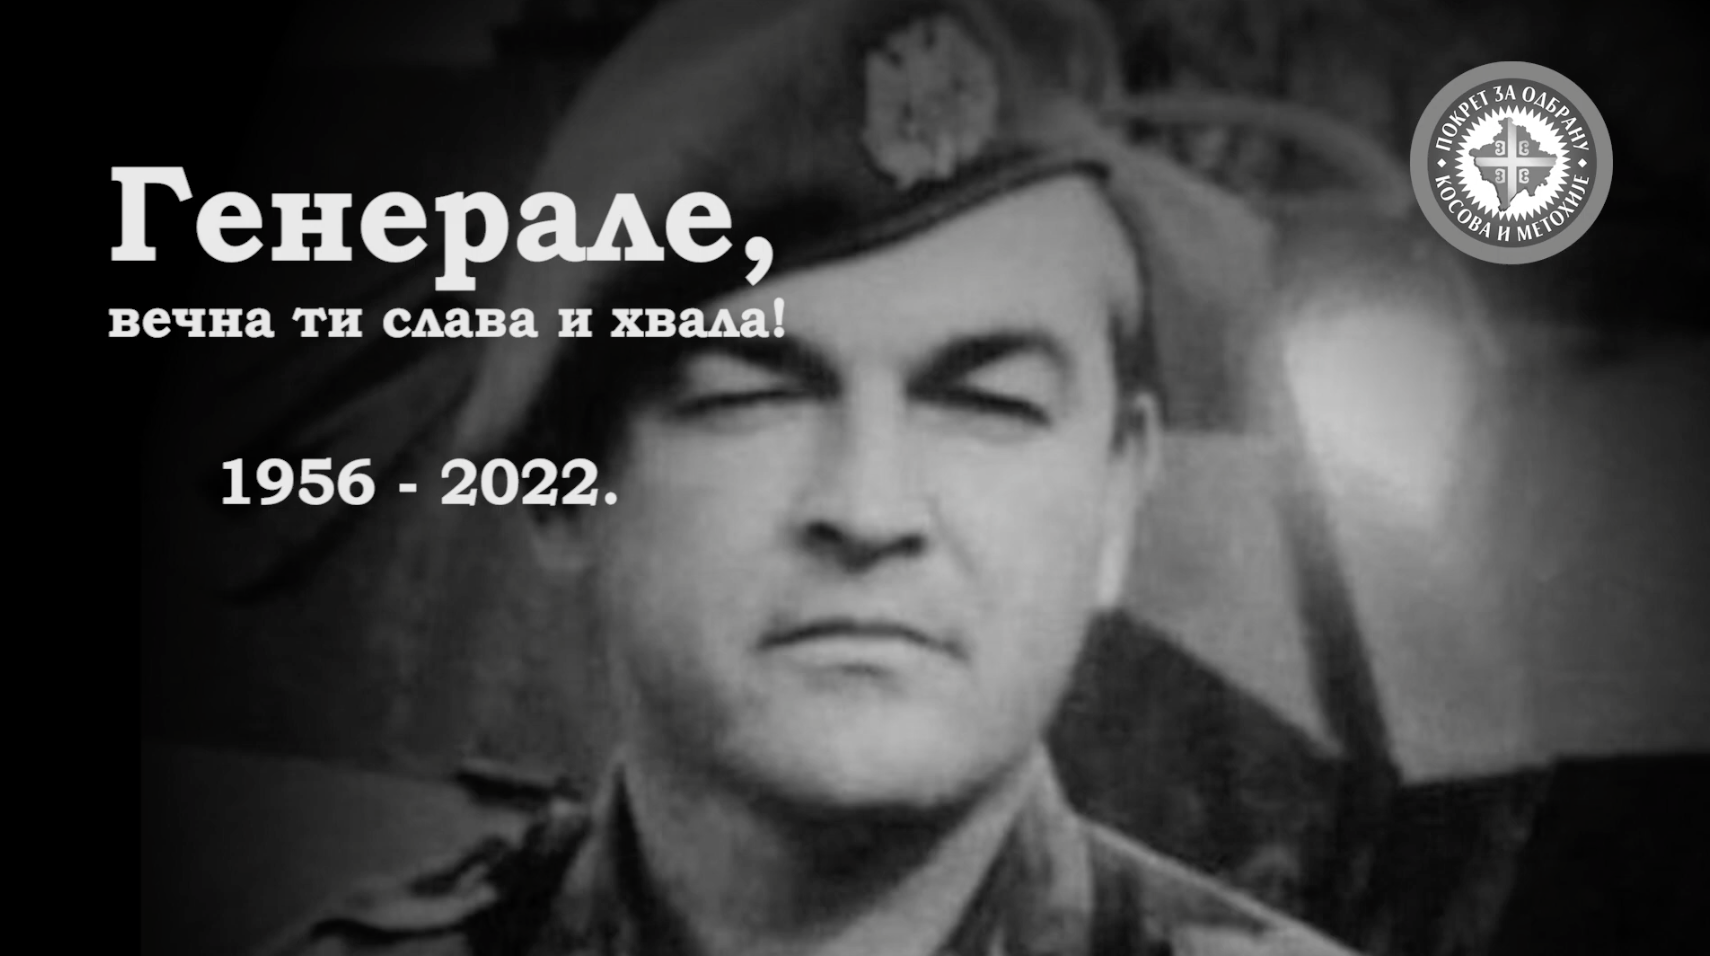 Генерал Божидар Делић (1956–2022) – In memoriam